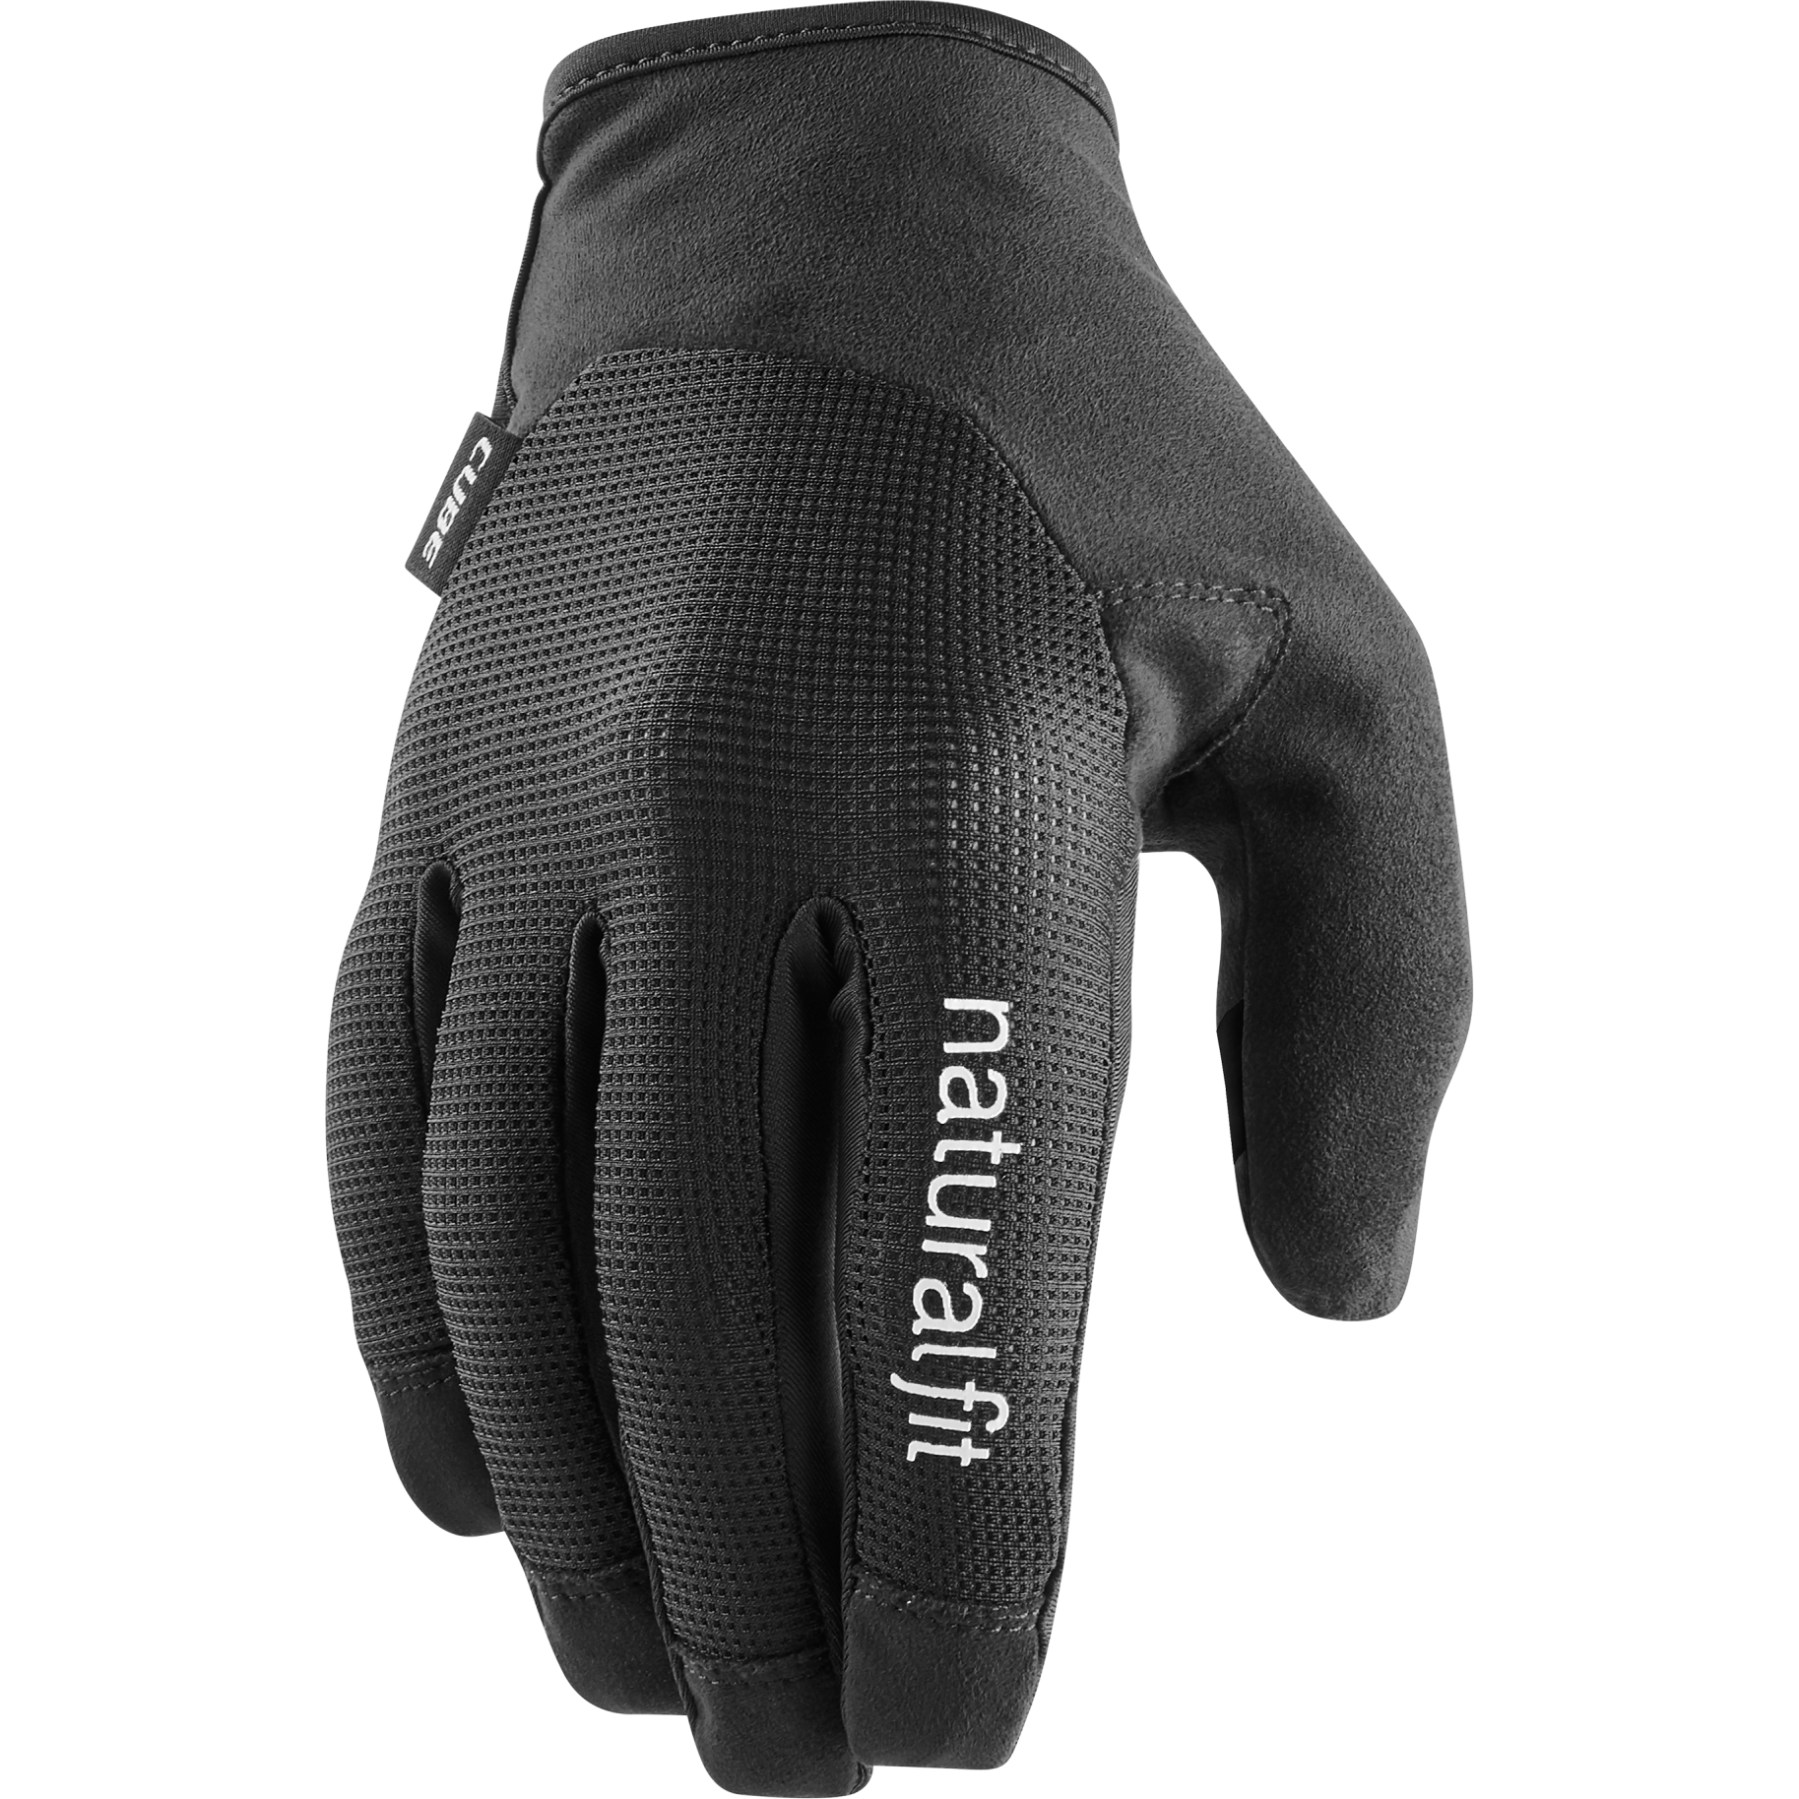 Produktbild von CUBE X NF Vollfinger-Handschuhe - schwarz